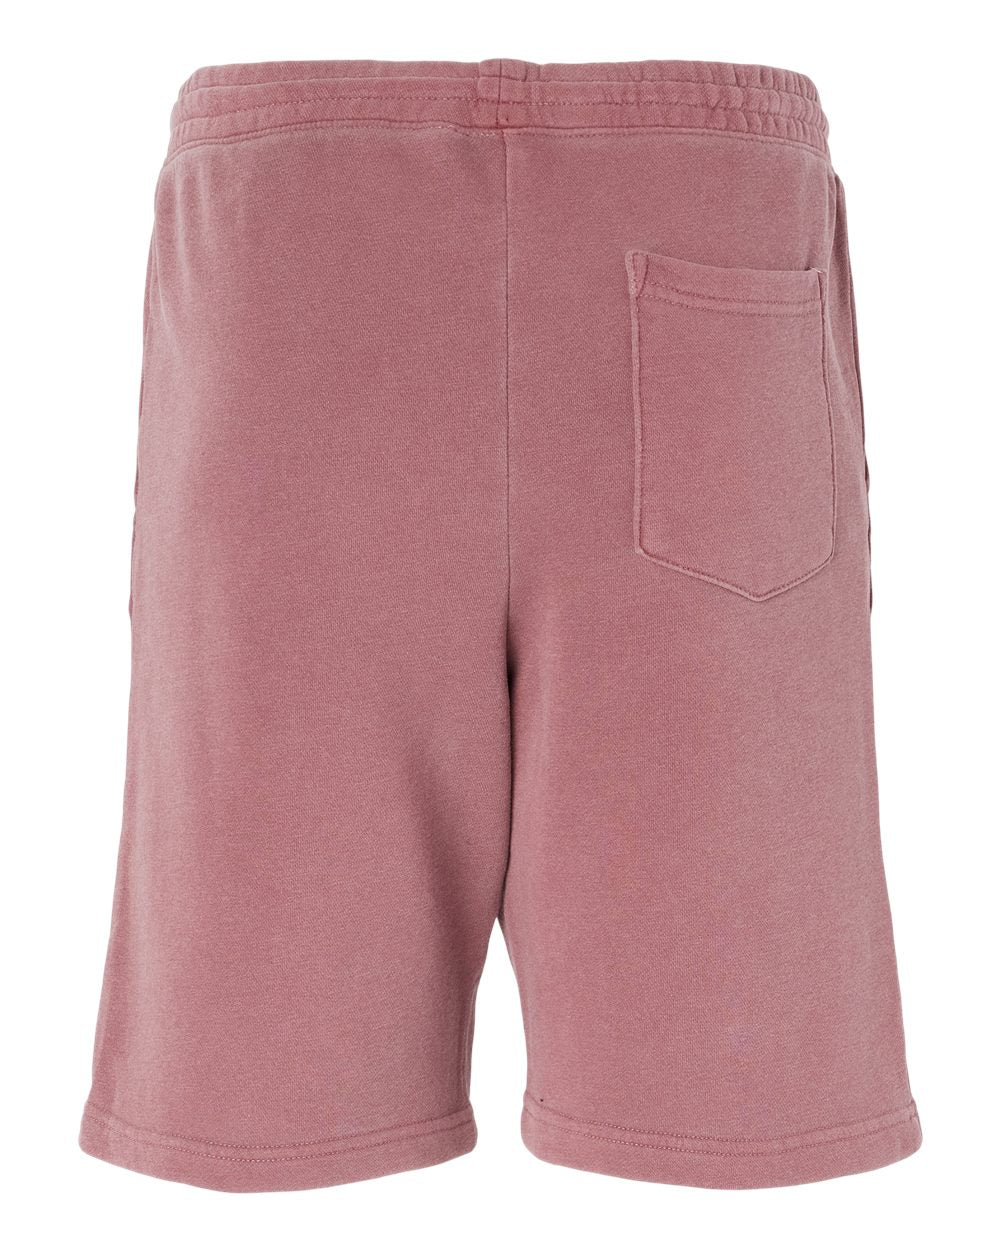 SOULSKY Men's Fleece Shorts (Maroon)